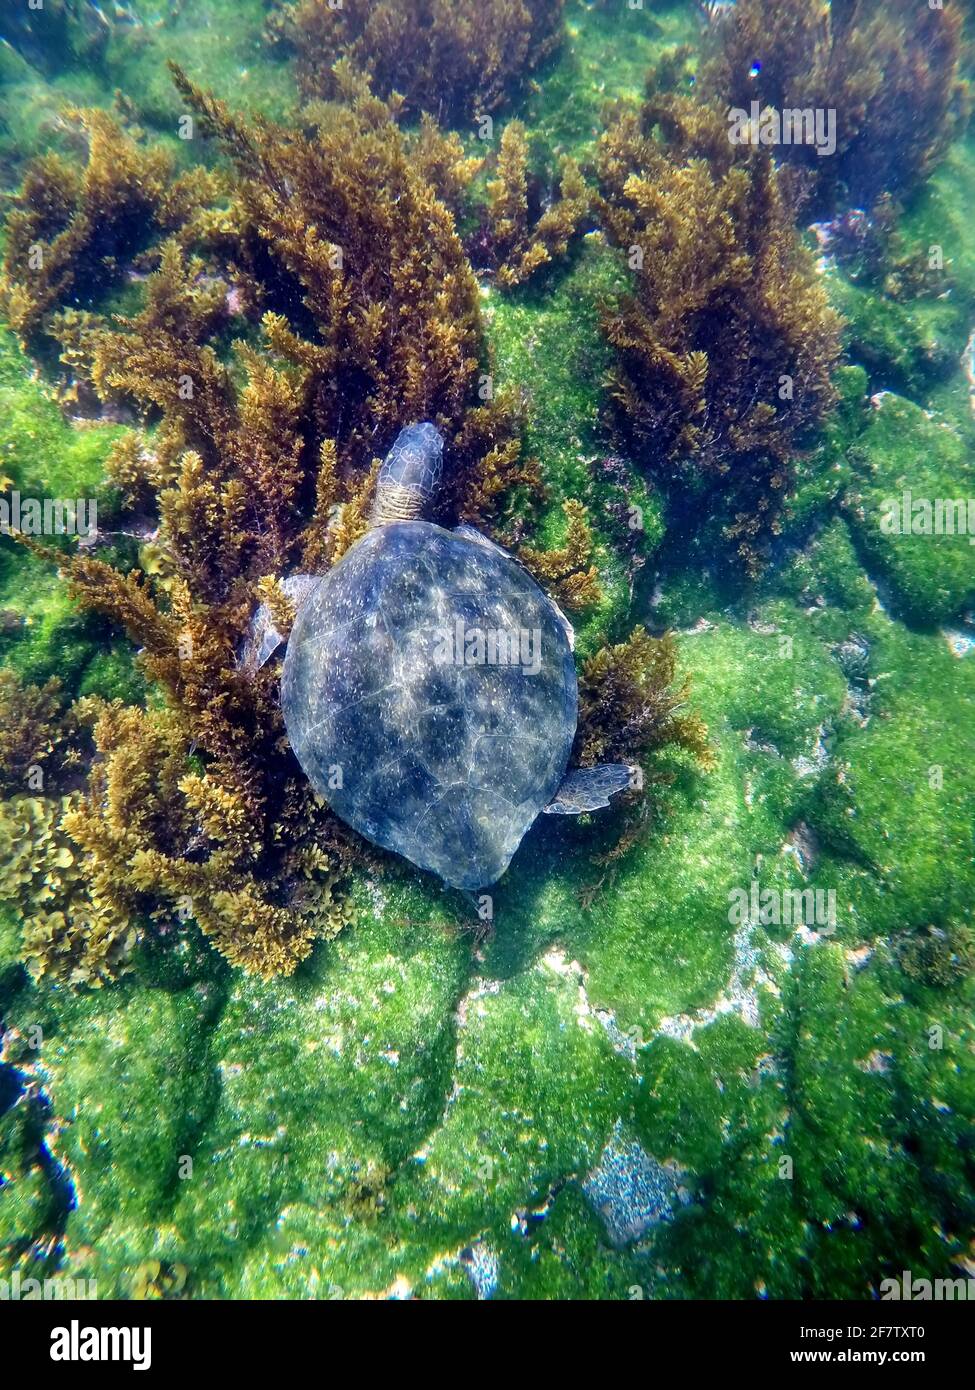 Galapagos green turtle eating seaweed at Punta Espinoza, Fernandina Island, Galapagos, Ecuador Stock Photo